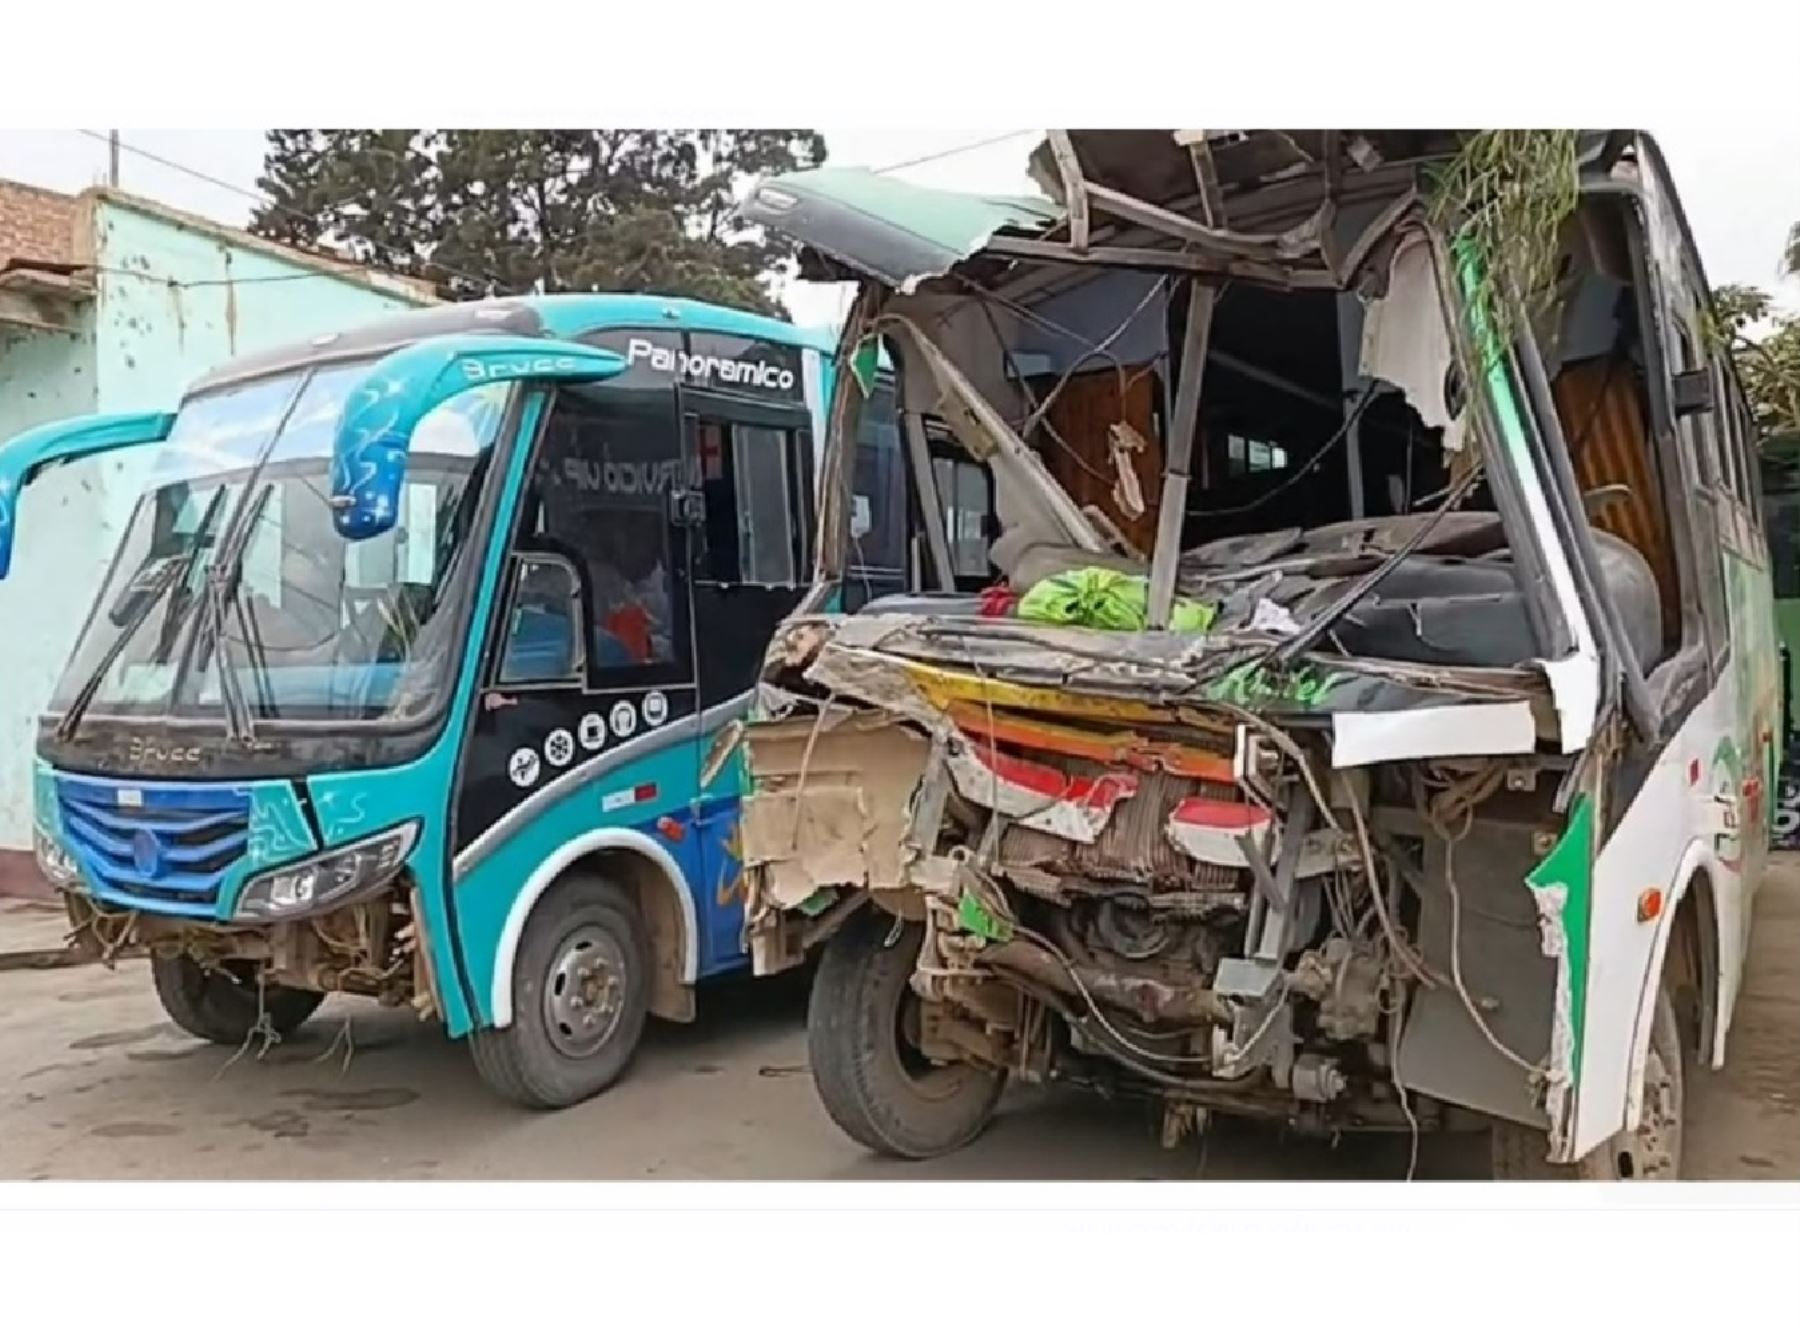 Seis personas resultaron heridas tras el choque de dos buses interprovinciales en el distrito de Laredo, provincia de Trujillo, informó la Policía Nacional. ANDINA/Difusión